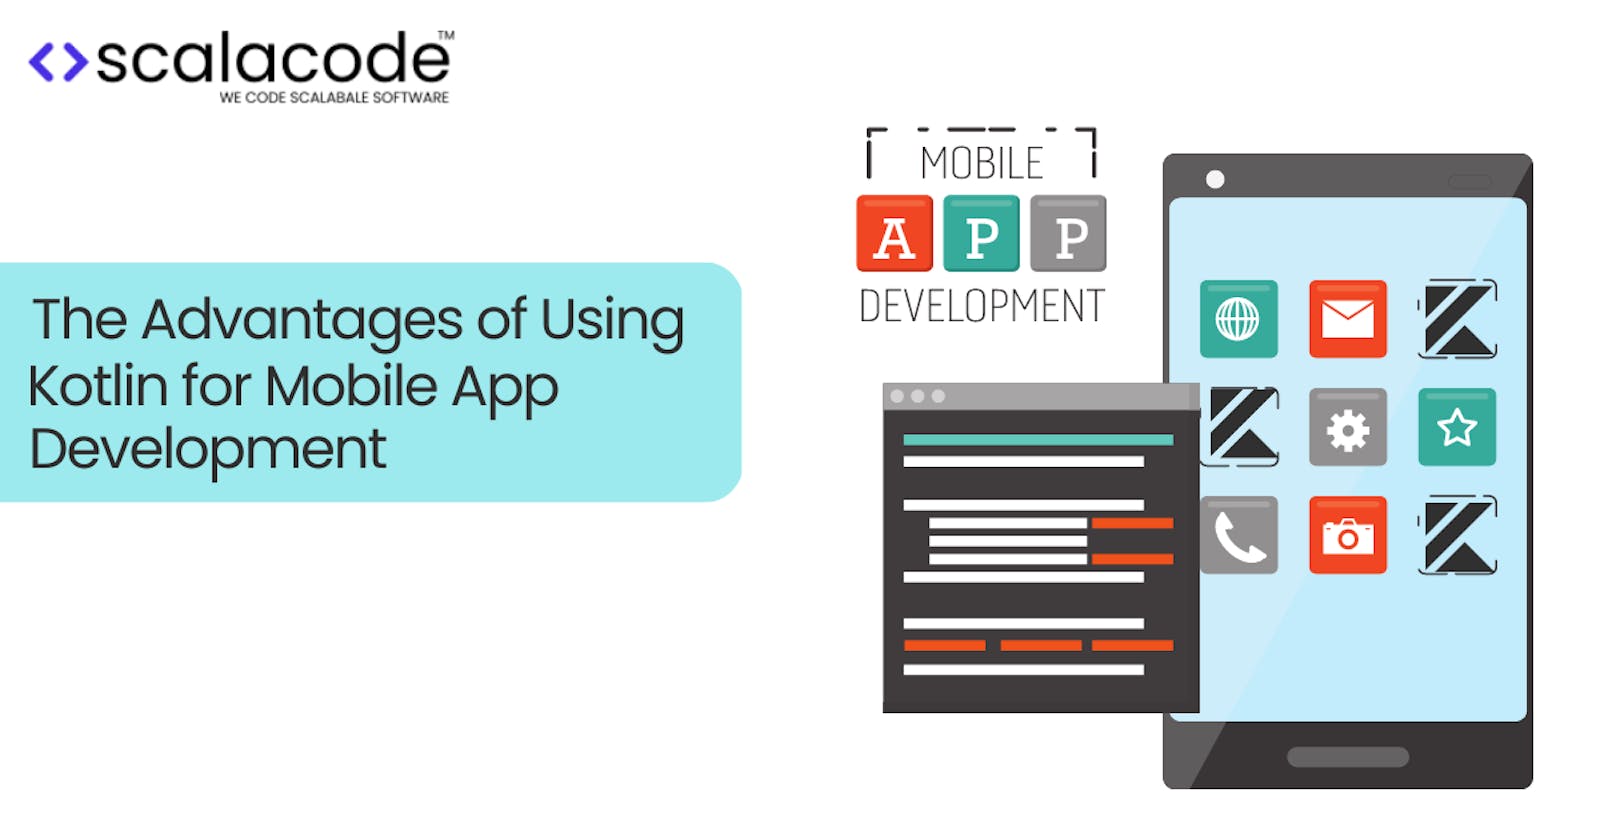 The Advantages of Using Kotlin for Mobile App Development